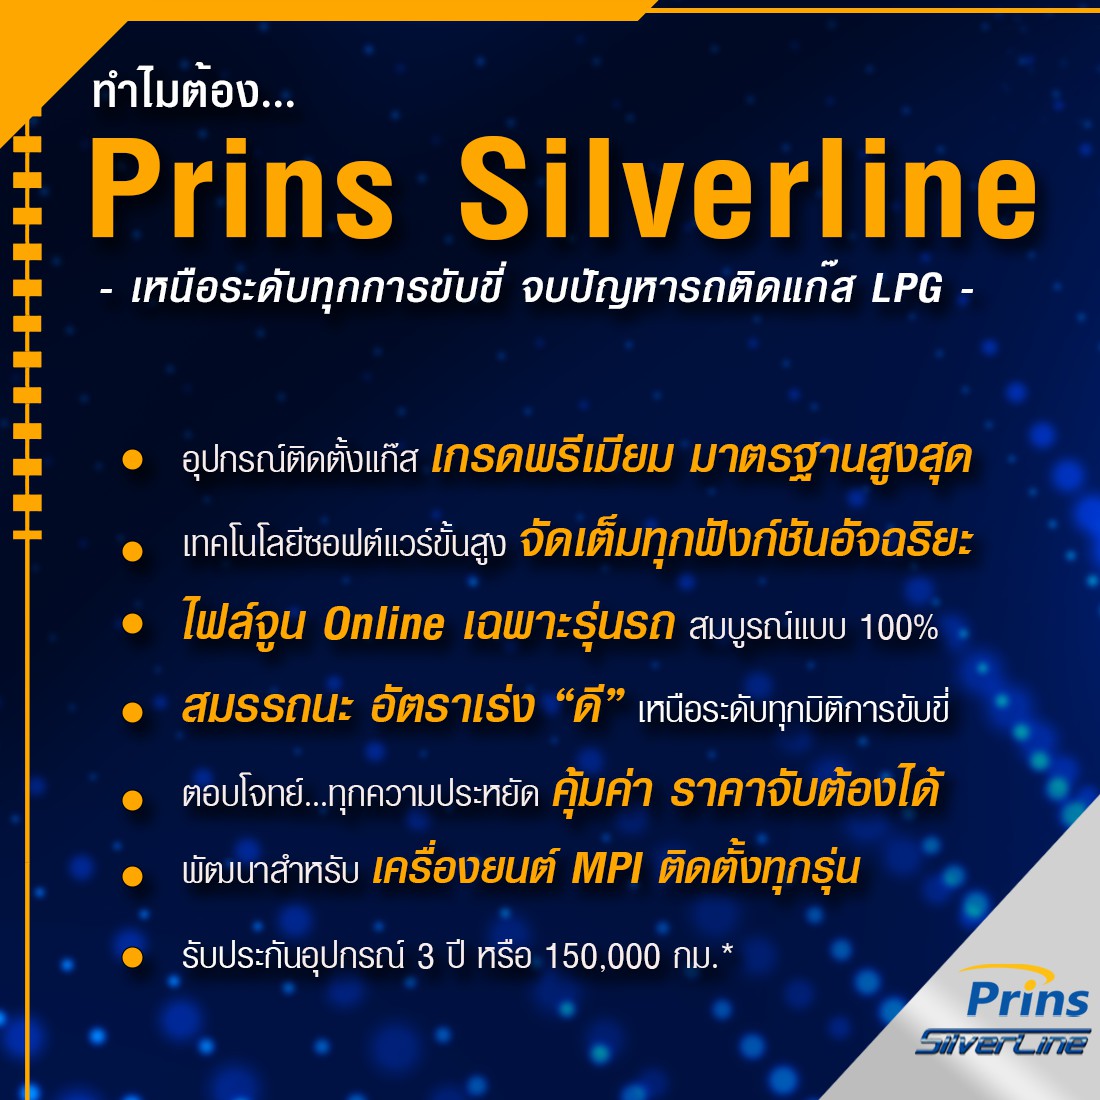 02-8 ทำไมต้อง Prins Silverline